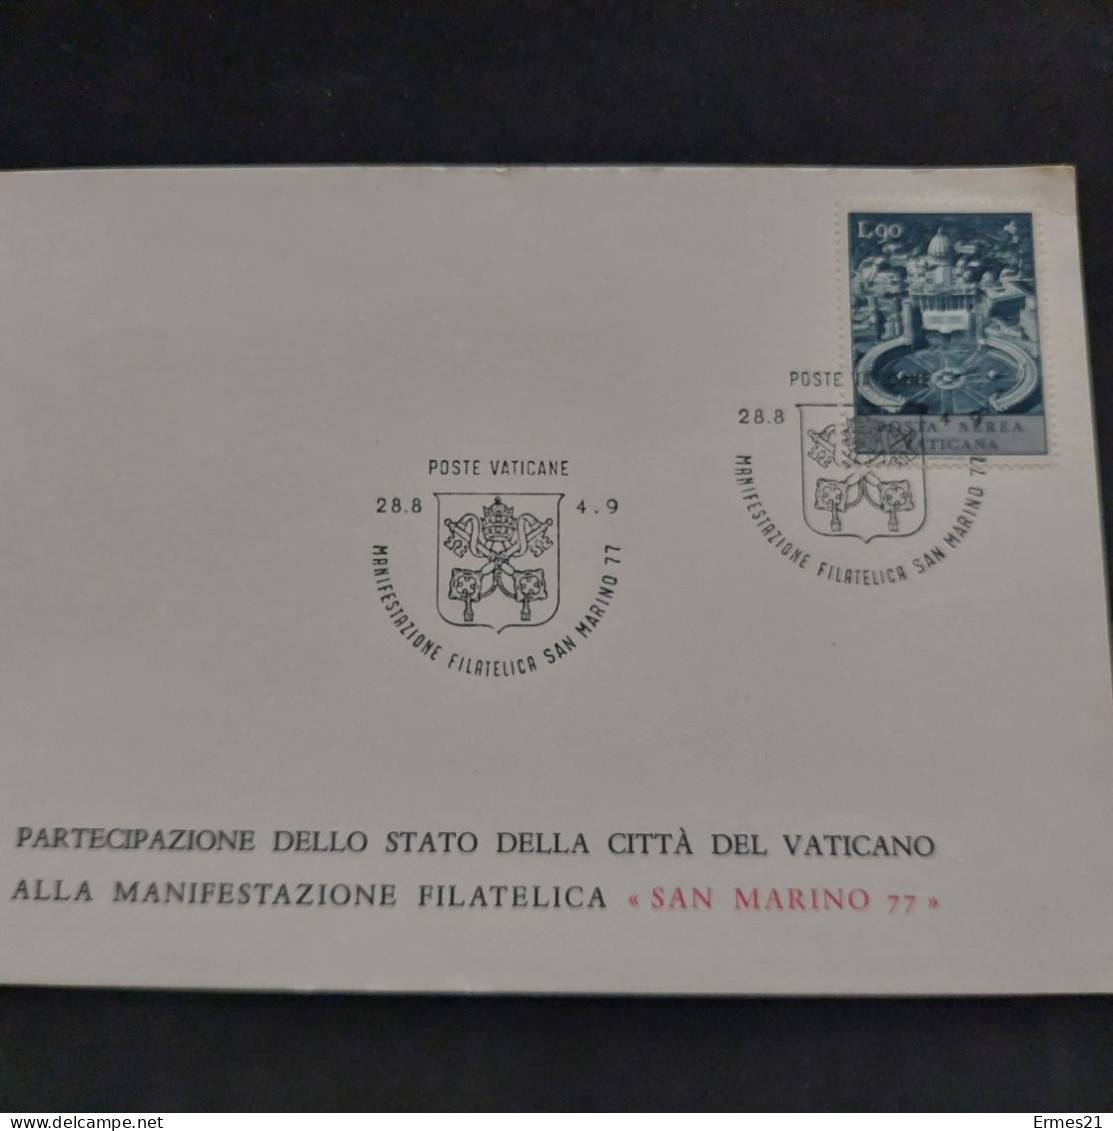 Governatorato  Poste Vaticane 1977. Partecipazione Città Del Vaticano Manifestazione Filatelica "San Marino 77". Nuove. - Varietà E Curiosità